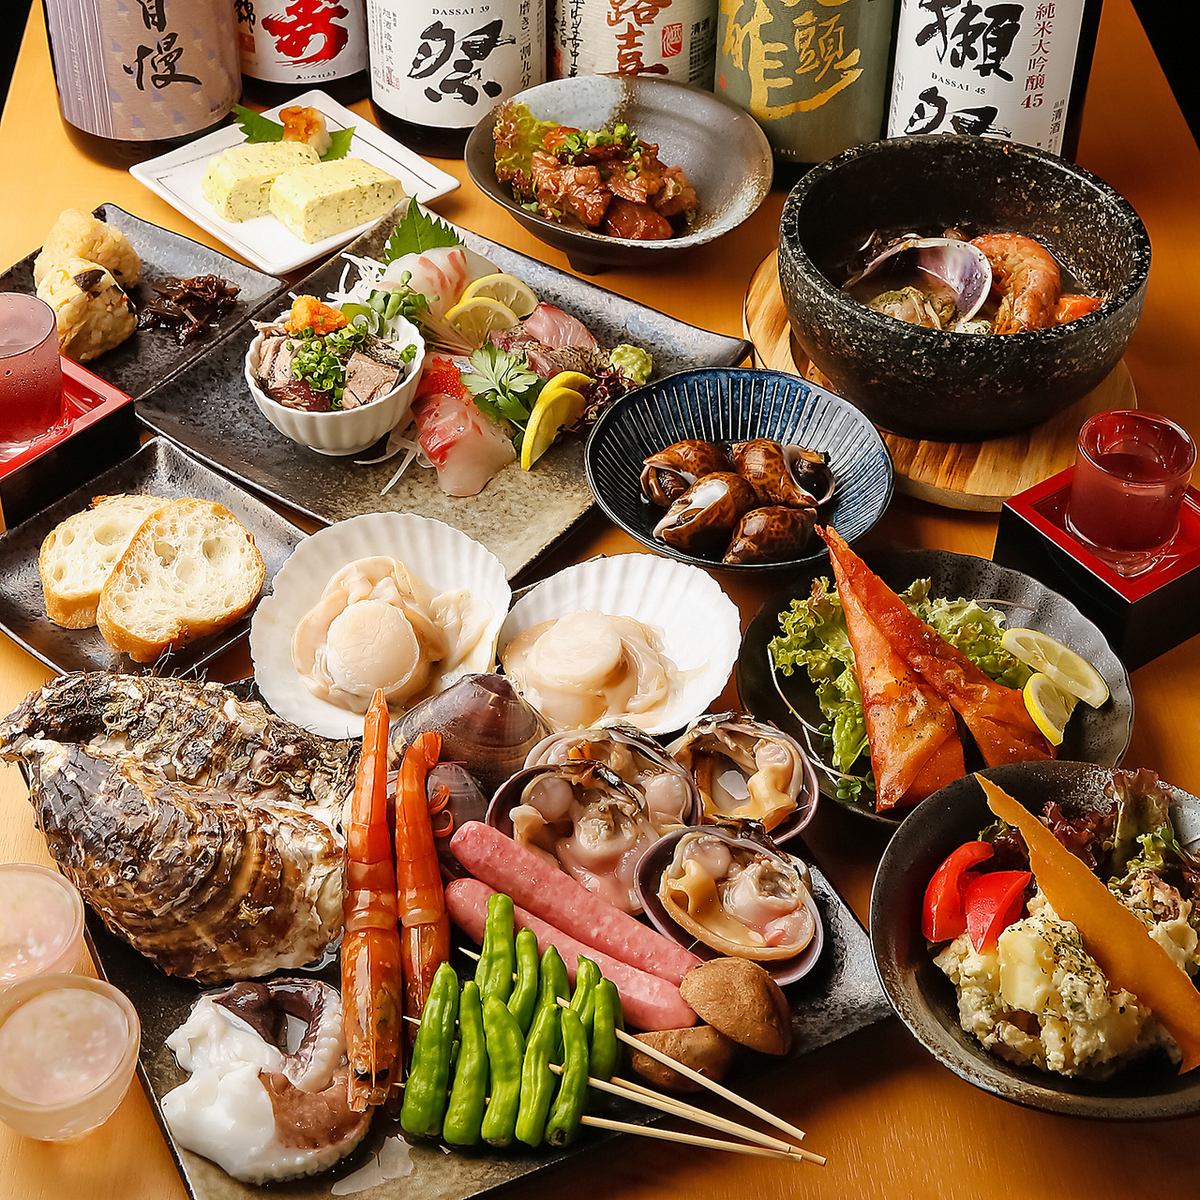 含180分钟无限畅饮■最受欢迎的海边套餐■11道菜品合计6,200日元